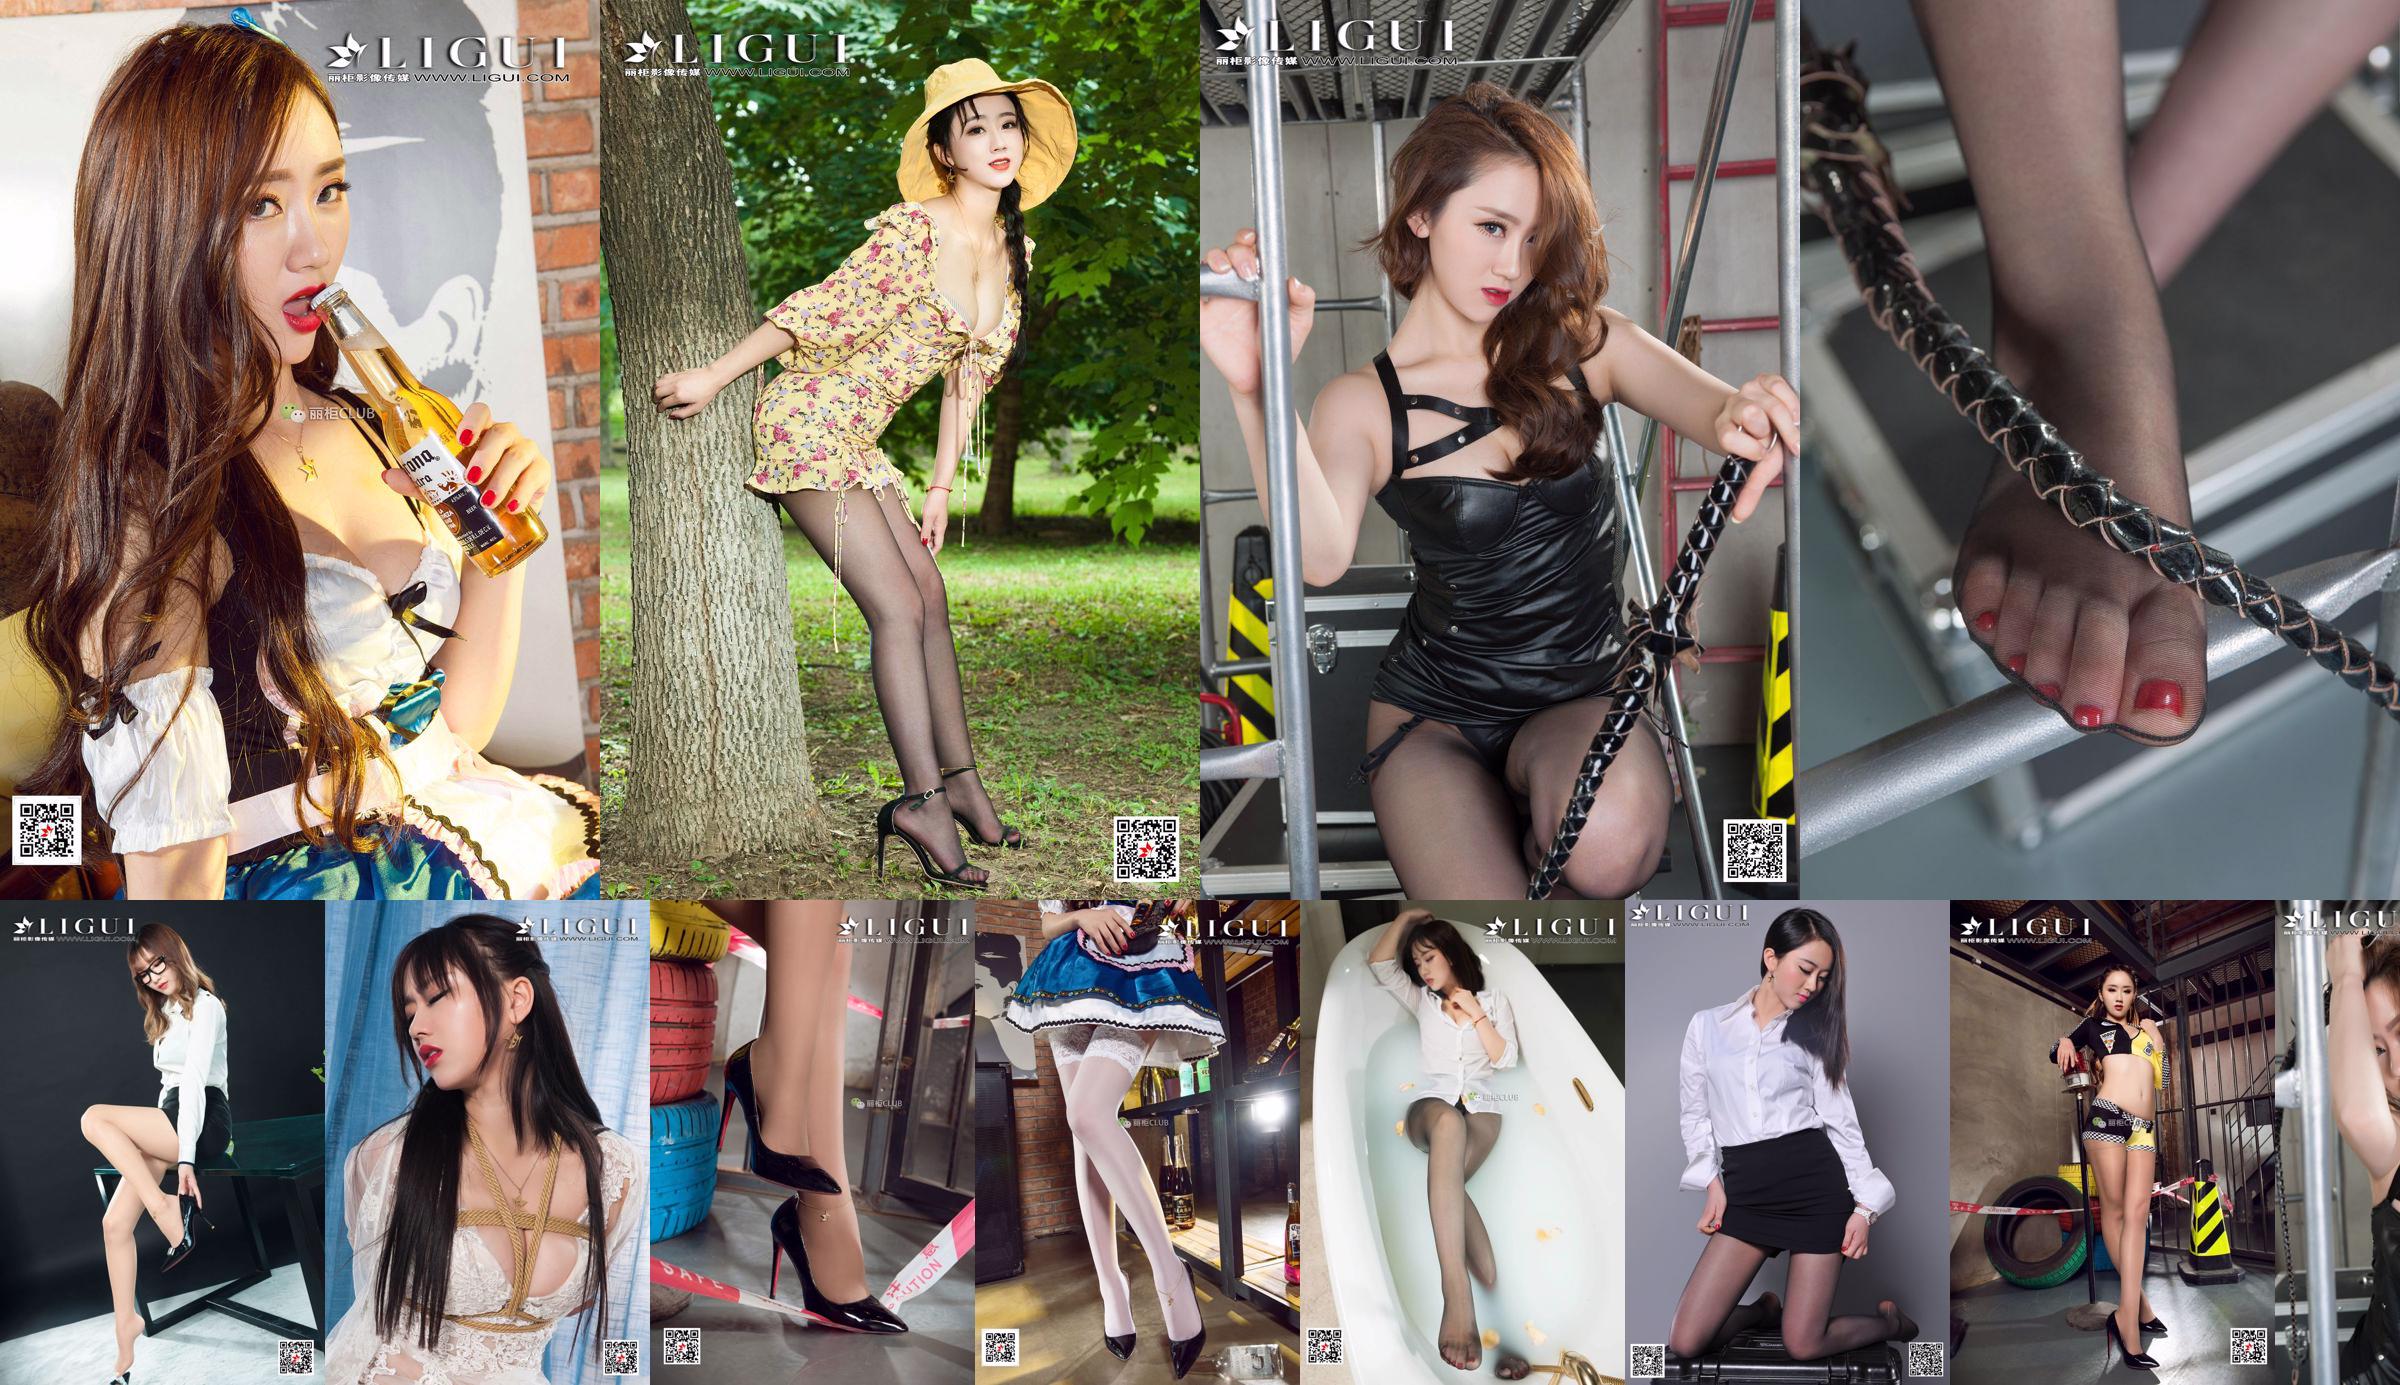 Modelle Ranran e Wen Rui "La tentazione delle ragazze della scuola gemella con i piedi di seta" [Ligui Ligui] No.e79199 Pagina 1